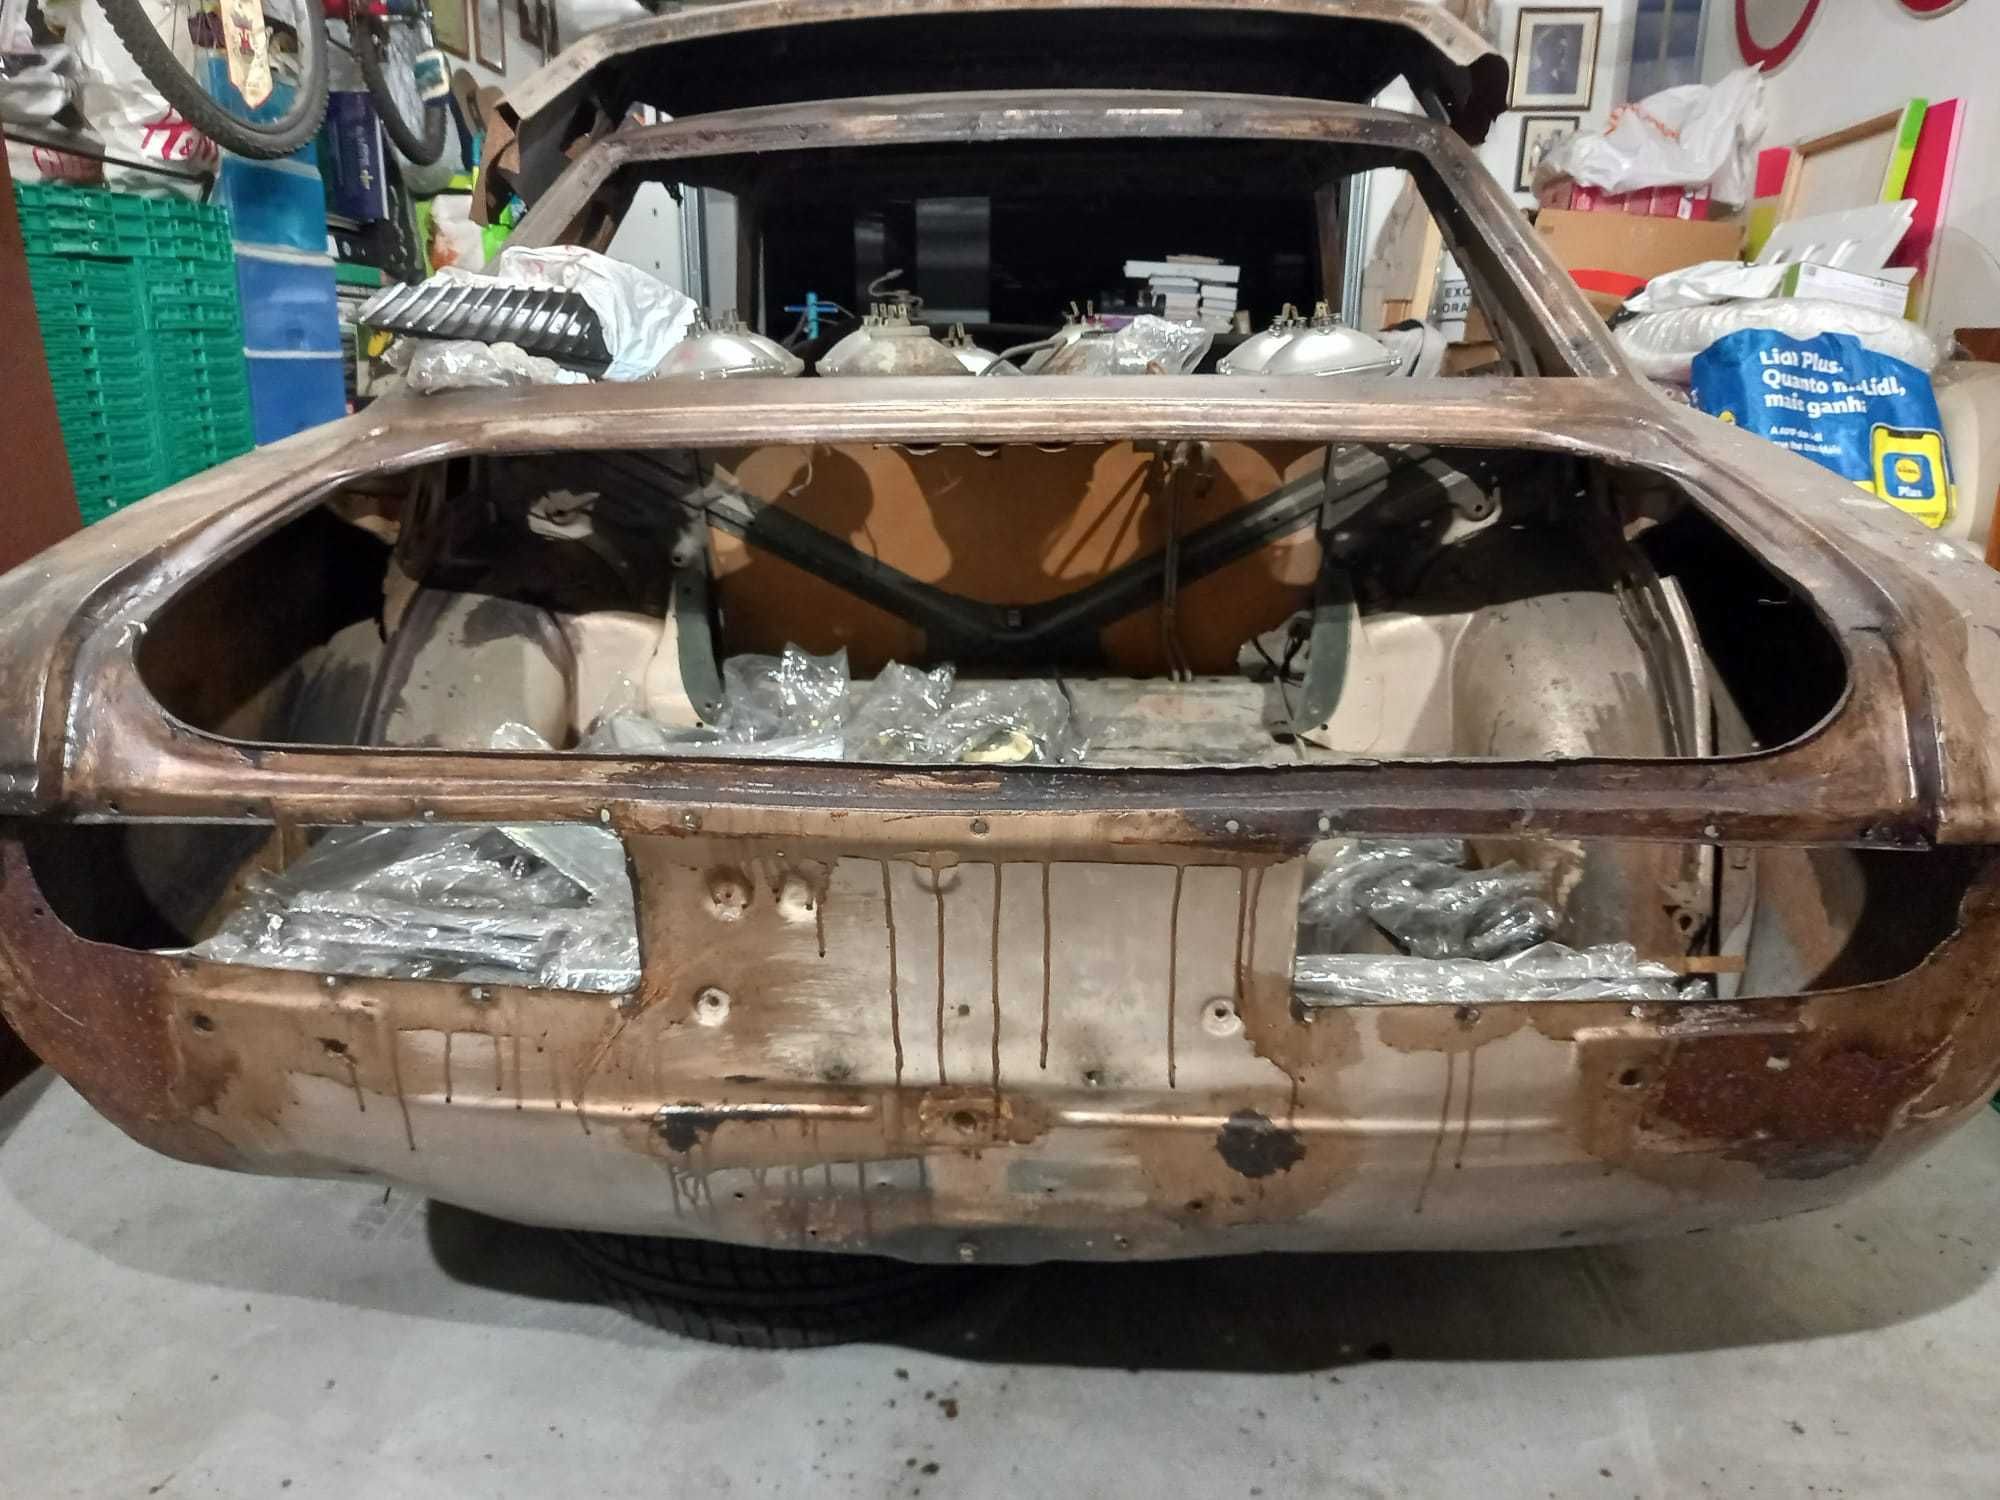 Toyota Celica TA22 completo para restaurar